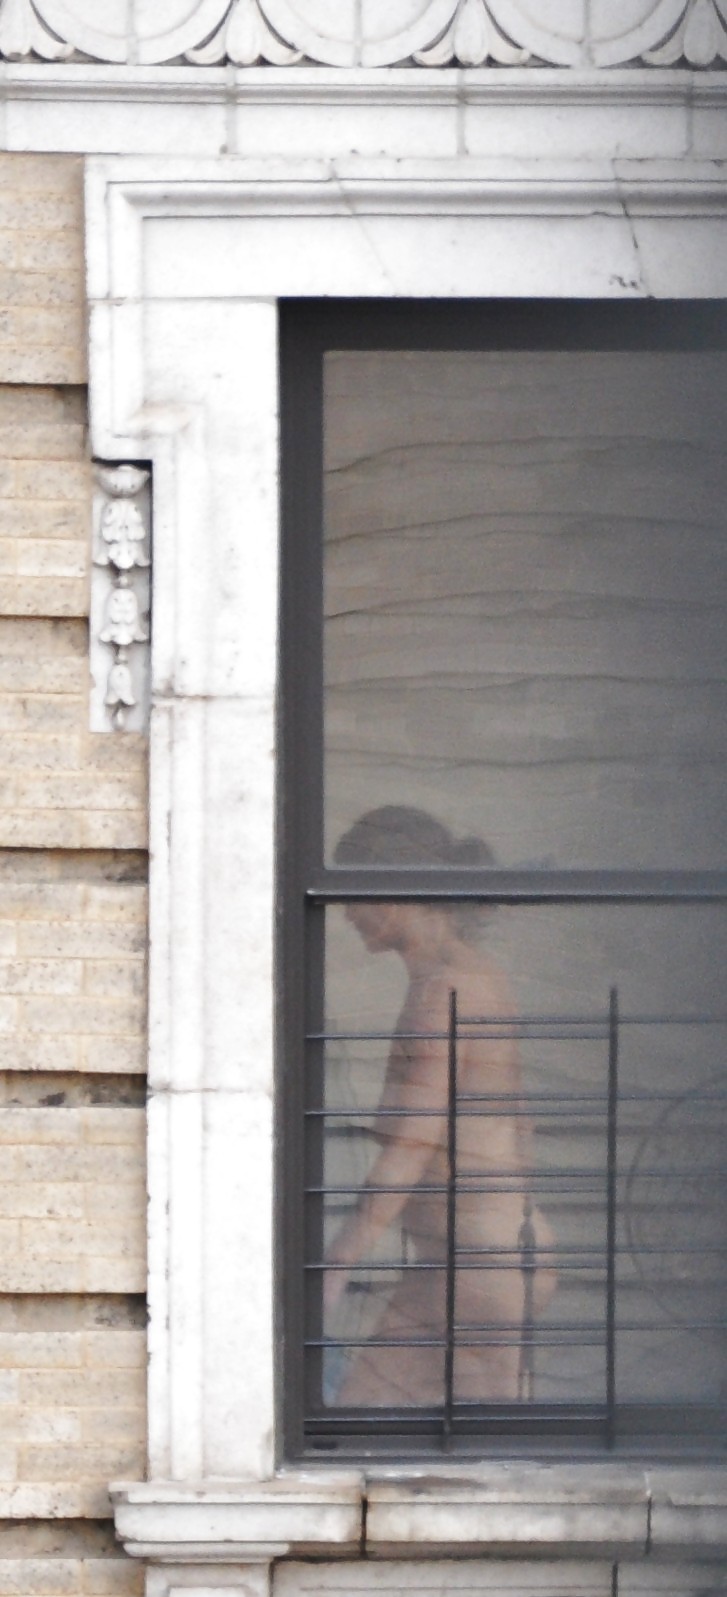 Harlem Nackt Nachbar Mädchen Nackt Im Fenster - New York #5378707